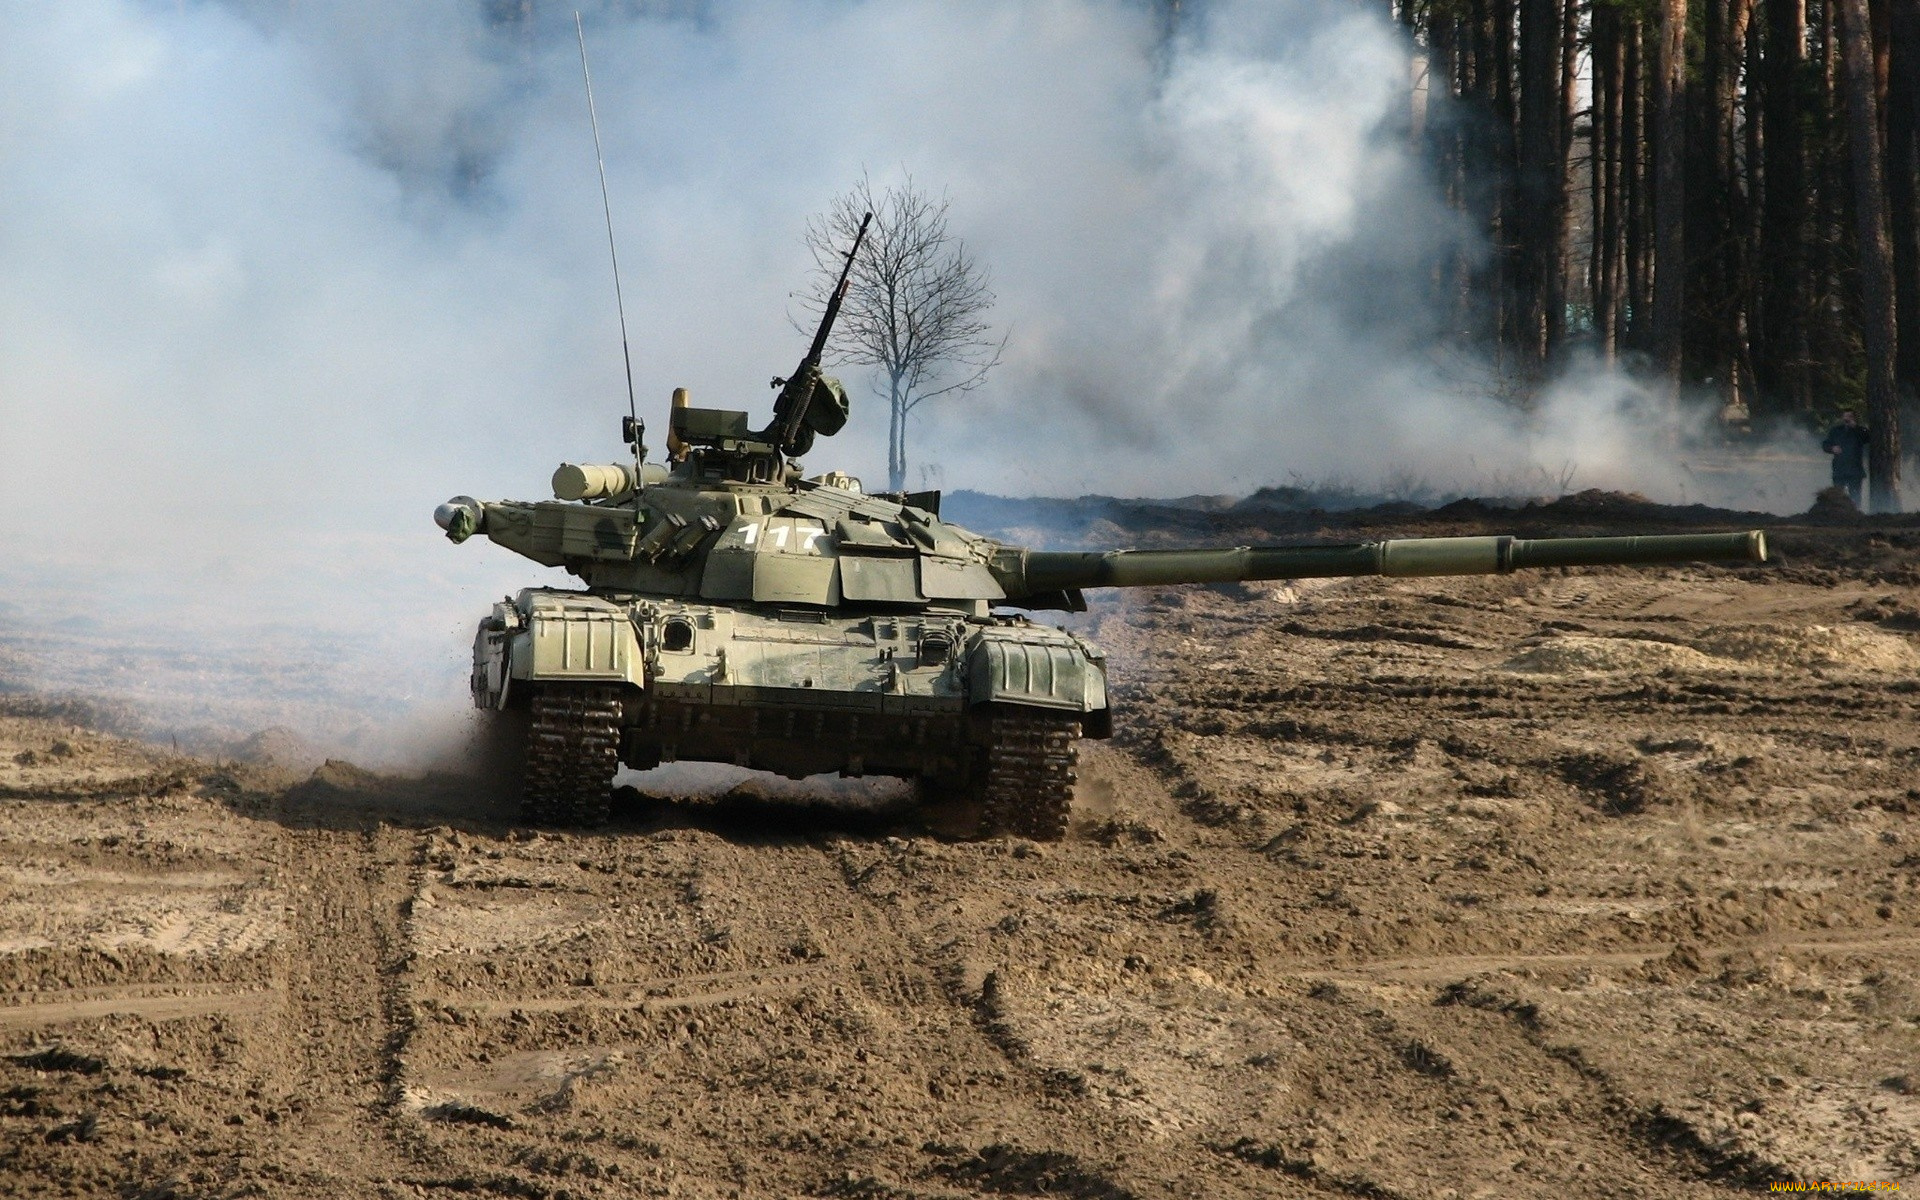 т-64бм, булат, техника, военная, техника, т-64бм, булат, основной, украинский, военная, боевой, танк